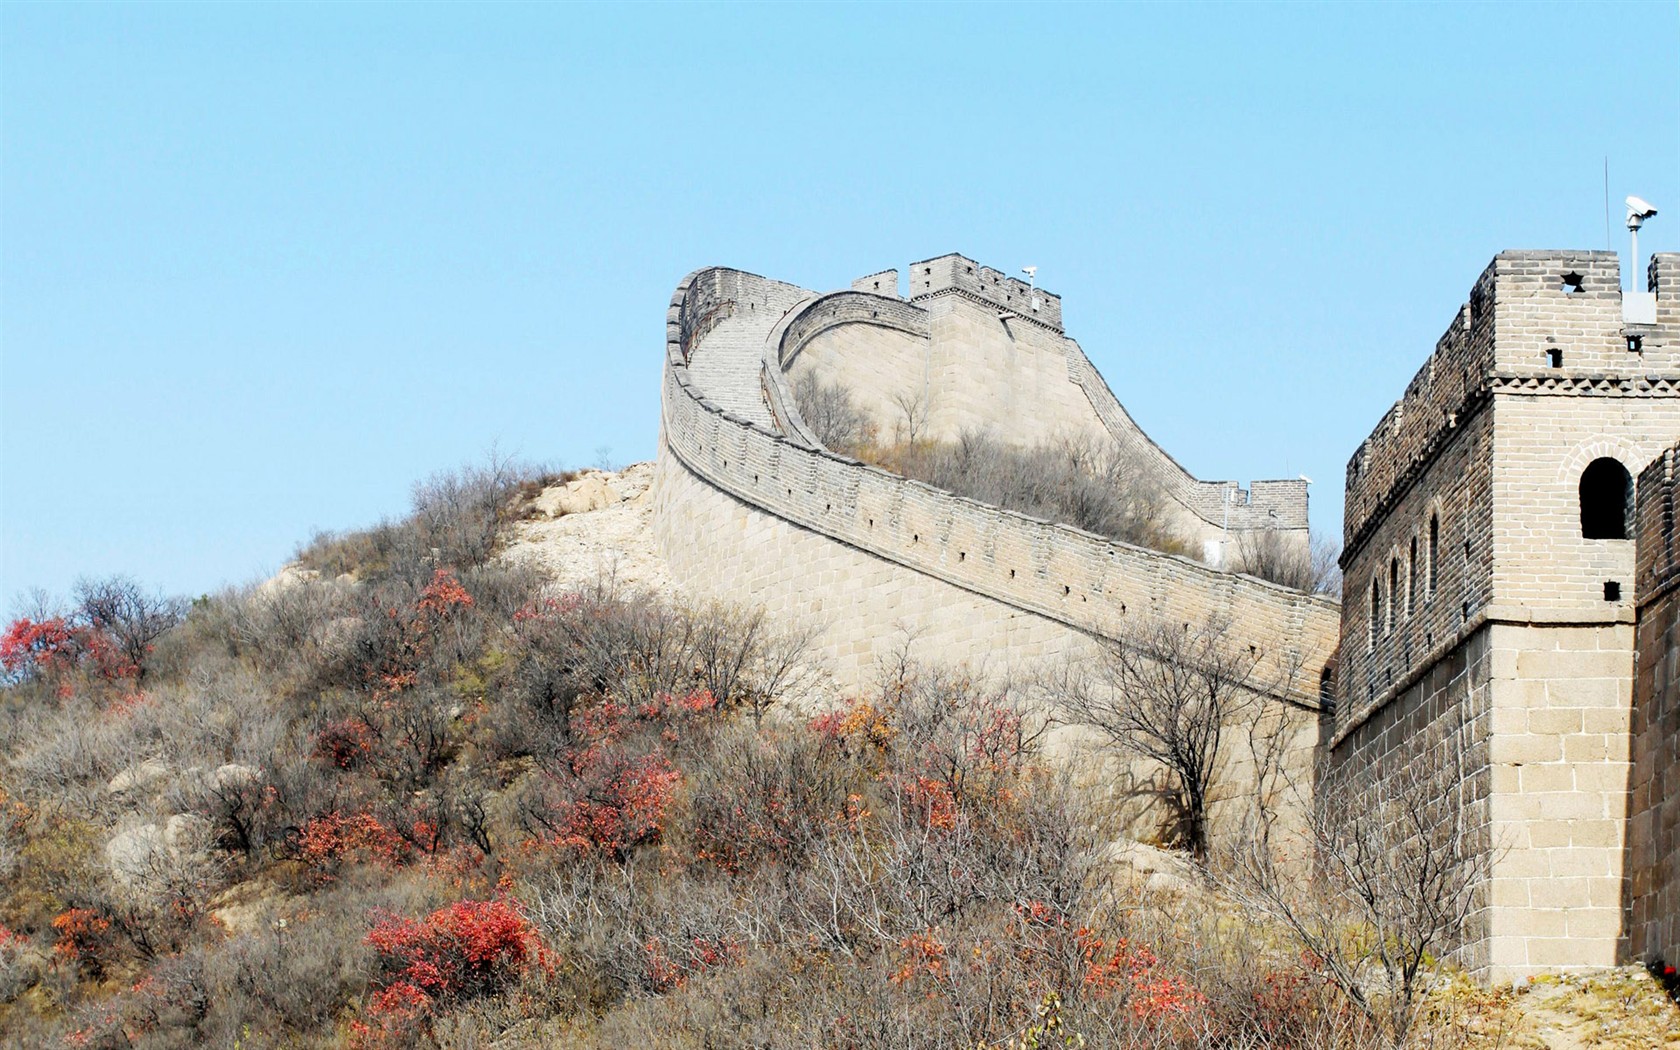 Peking Tour - Badaling Great Wall (GGC Werke) #1 - 1680x1050